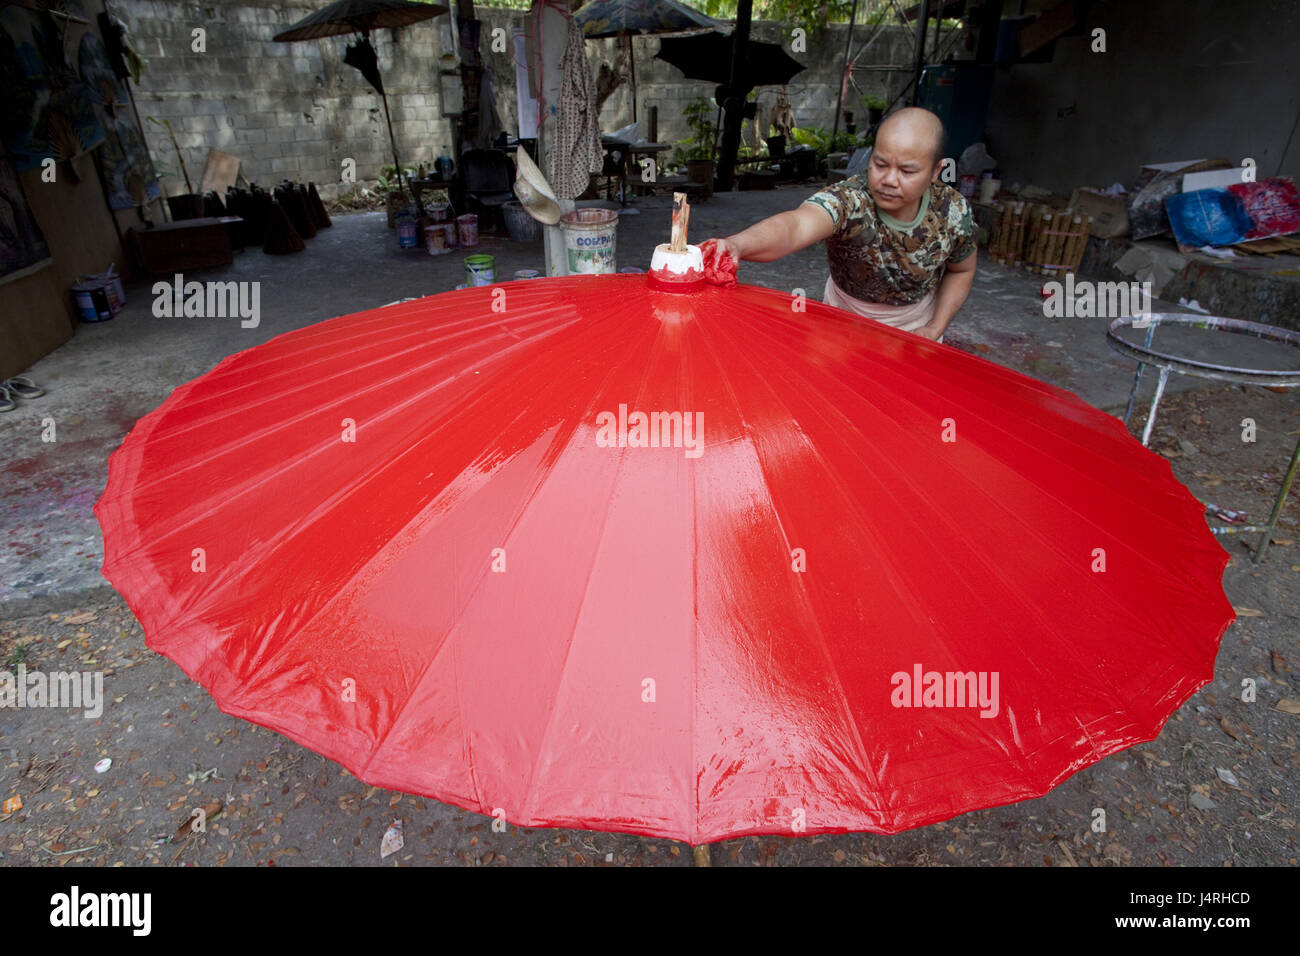 La Thaïlande, Chiang Mai, Bo, chanson Umbrella Village, l'homme, la production de papier, écran d'affichage, couleur, rouge, le modèle ne libération, Banque D'Images